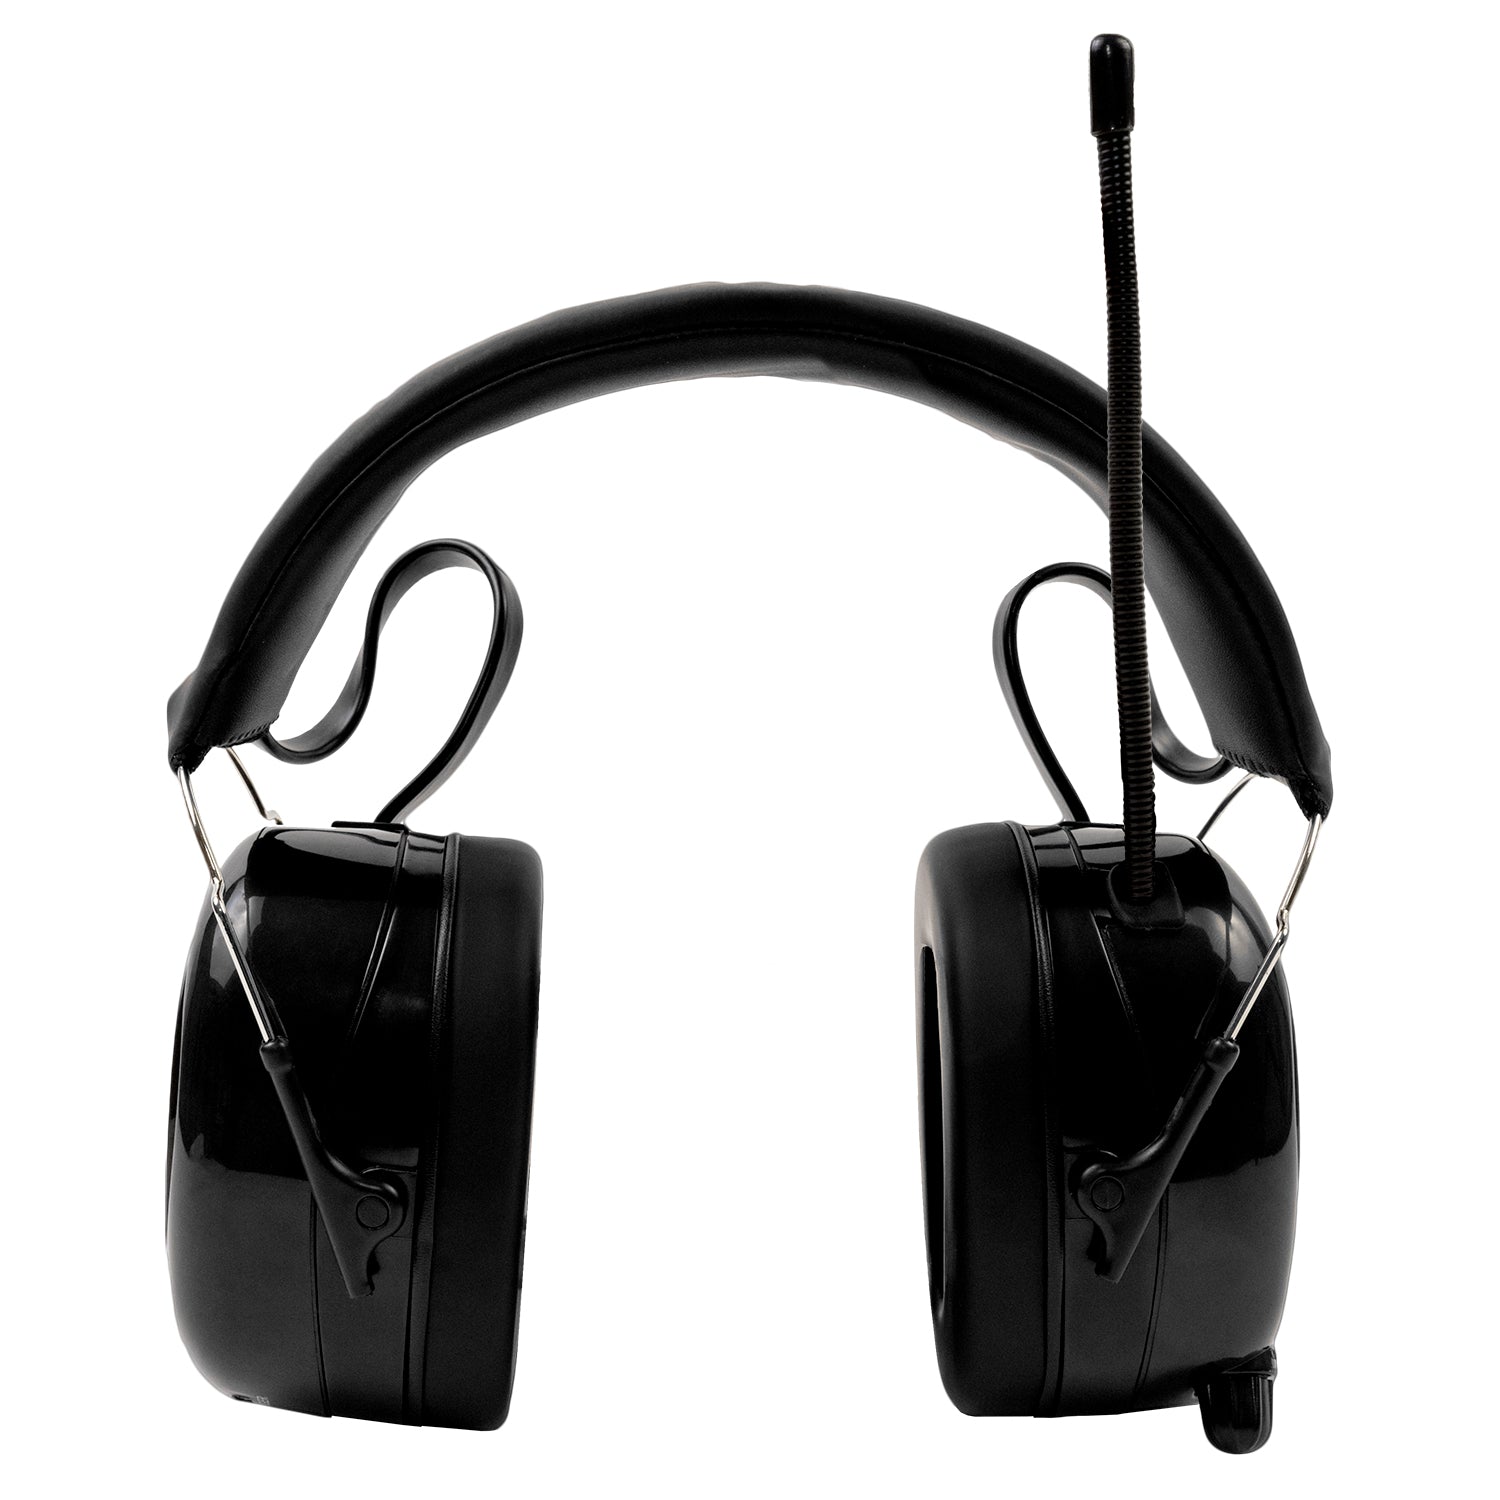 kromme Imperial Het formulier 24h Le Mans Radio and Bluetooth Oorkap voor gehoor bescherming en muziek  tijdens uw favoriete races – Alpine Hearing Protection